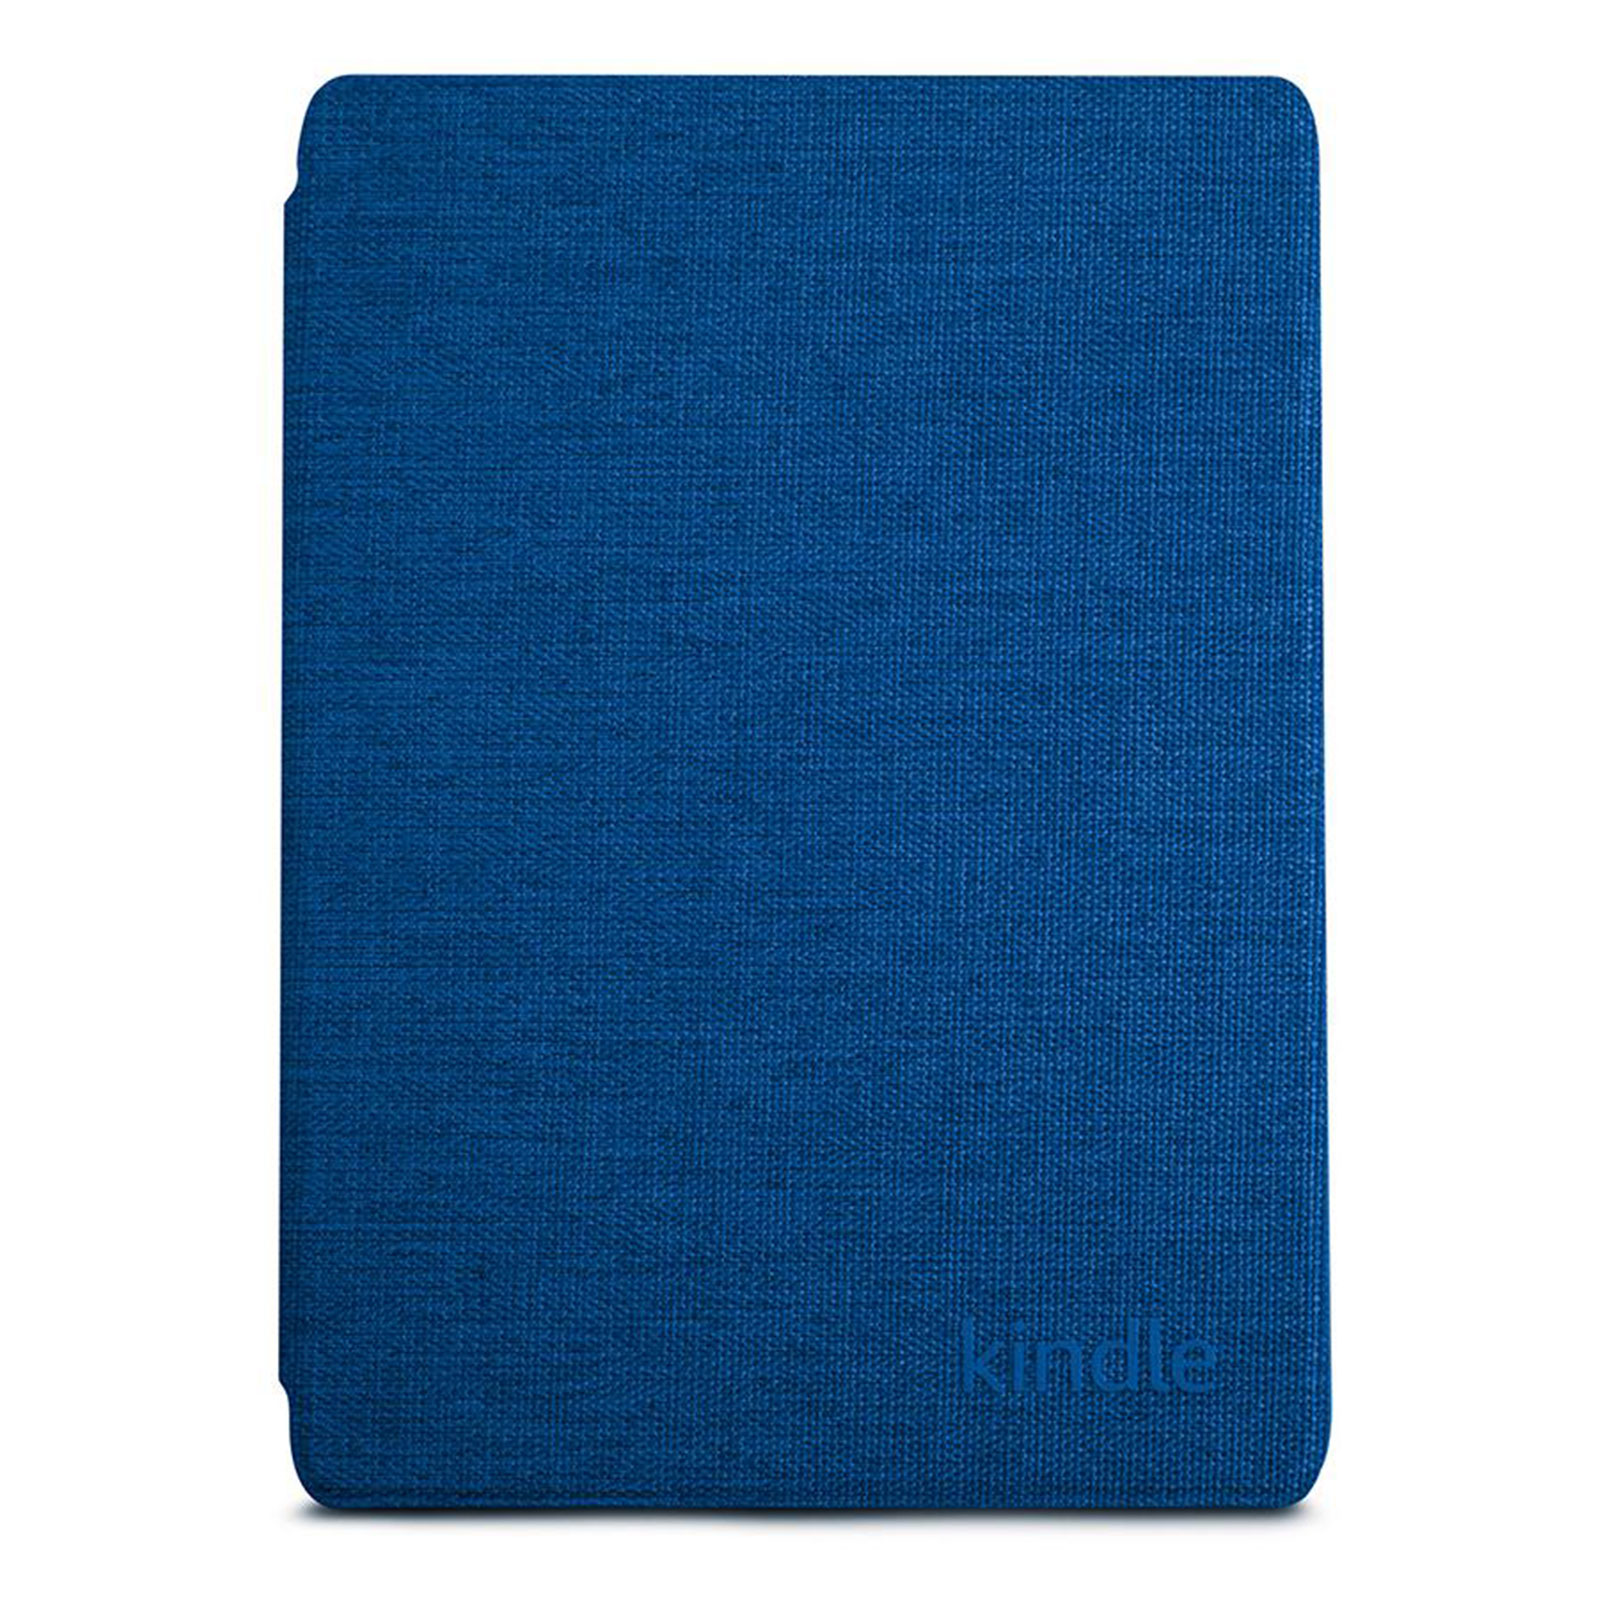 Amazon Kindle 2019 Hülle kobaltblau 2019 (B07K8J57L4)